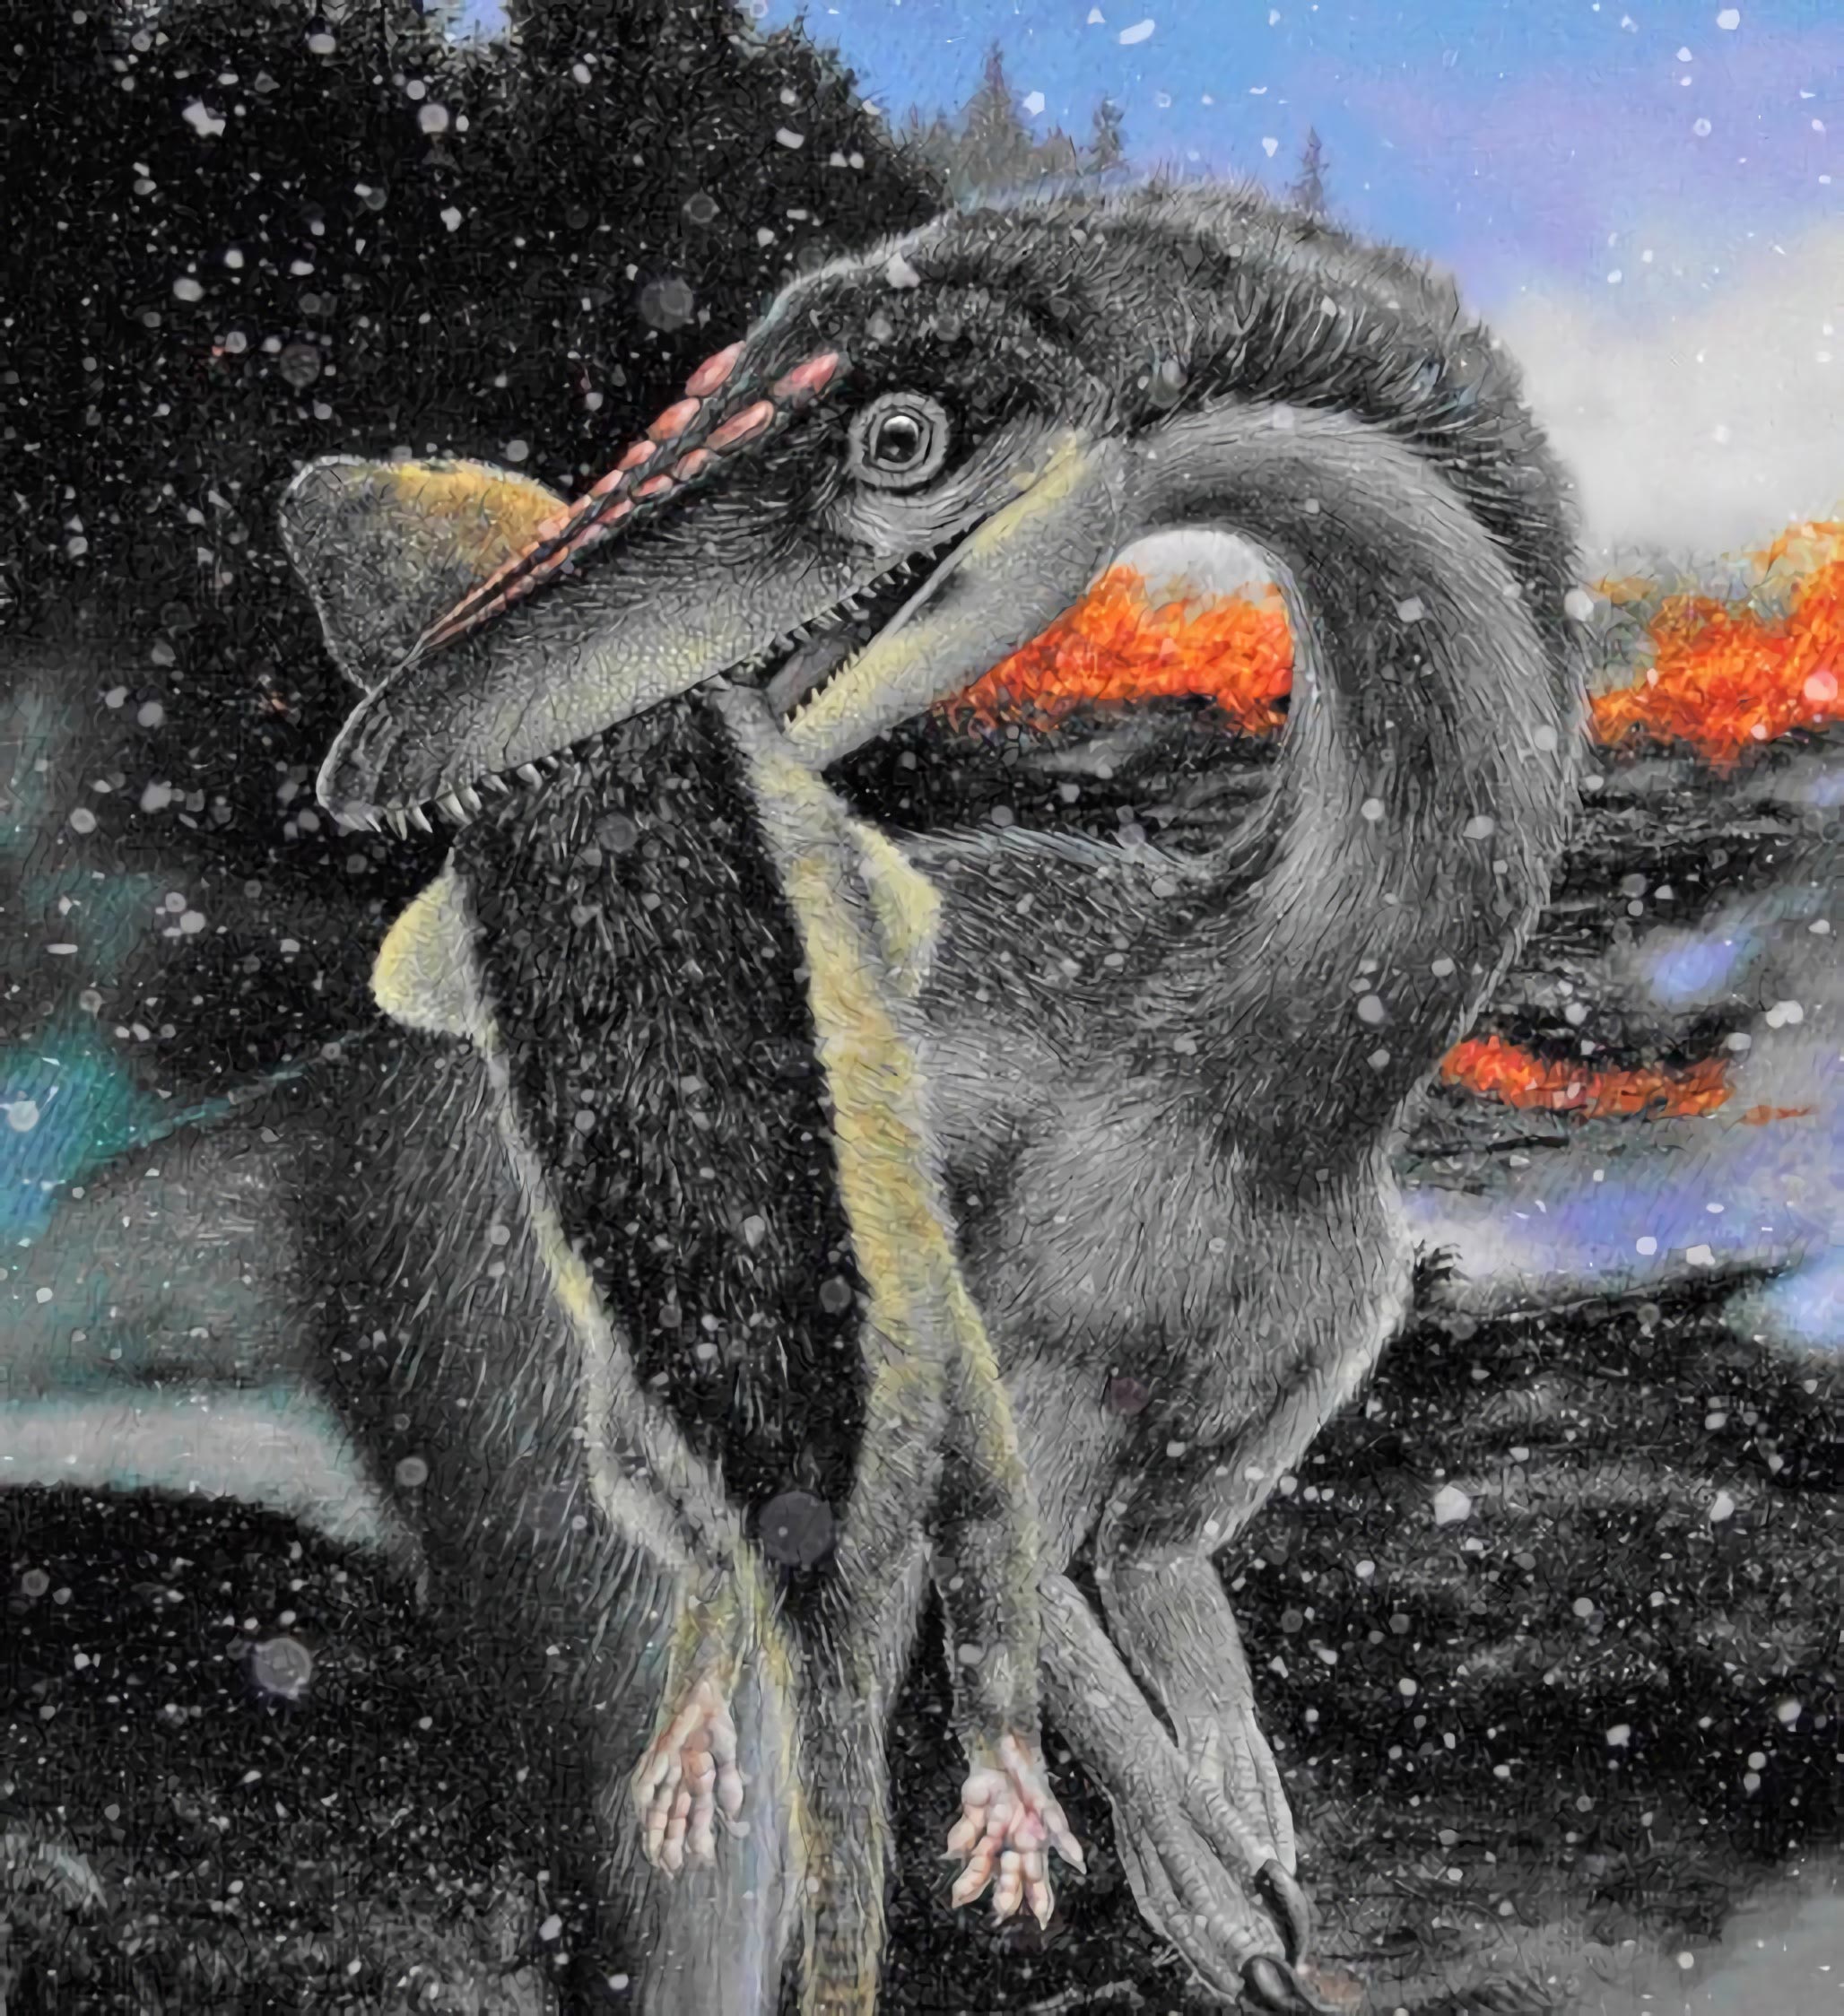 恐龙在冰雪中占领地球 而不是在温暖的环境中